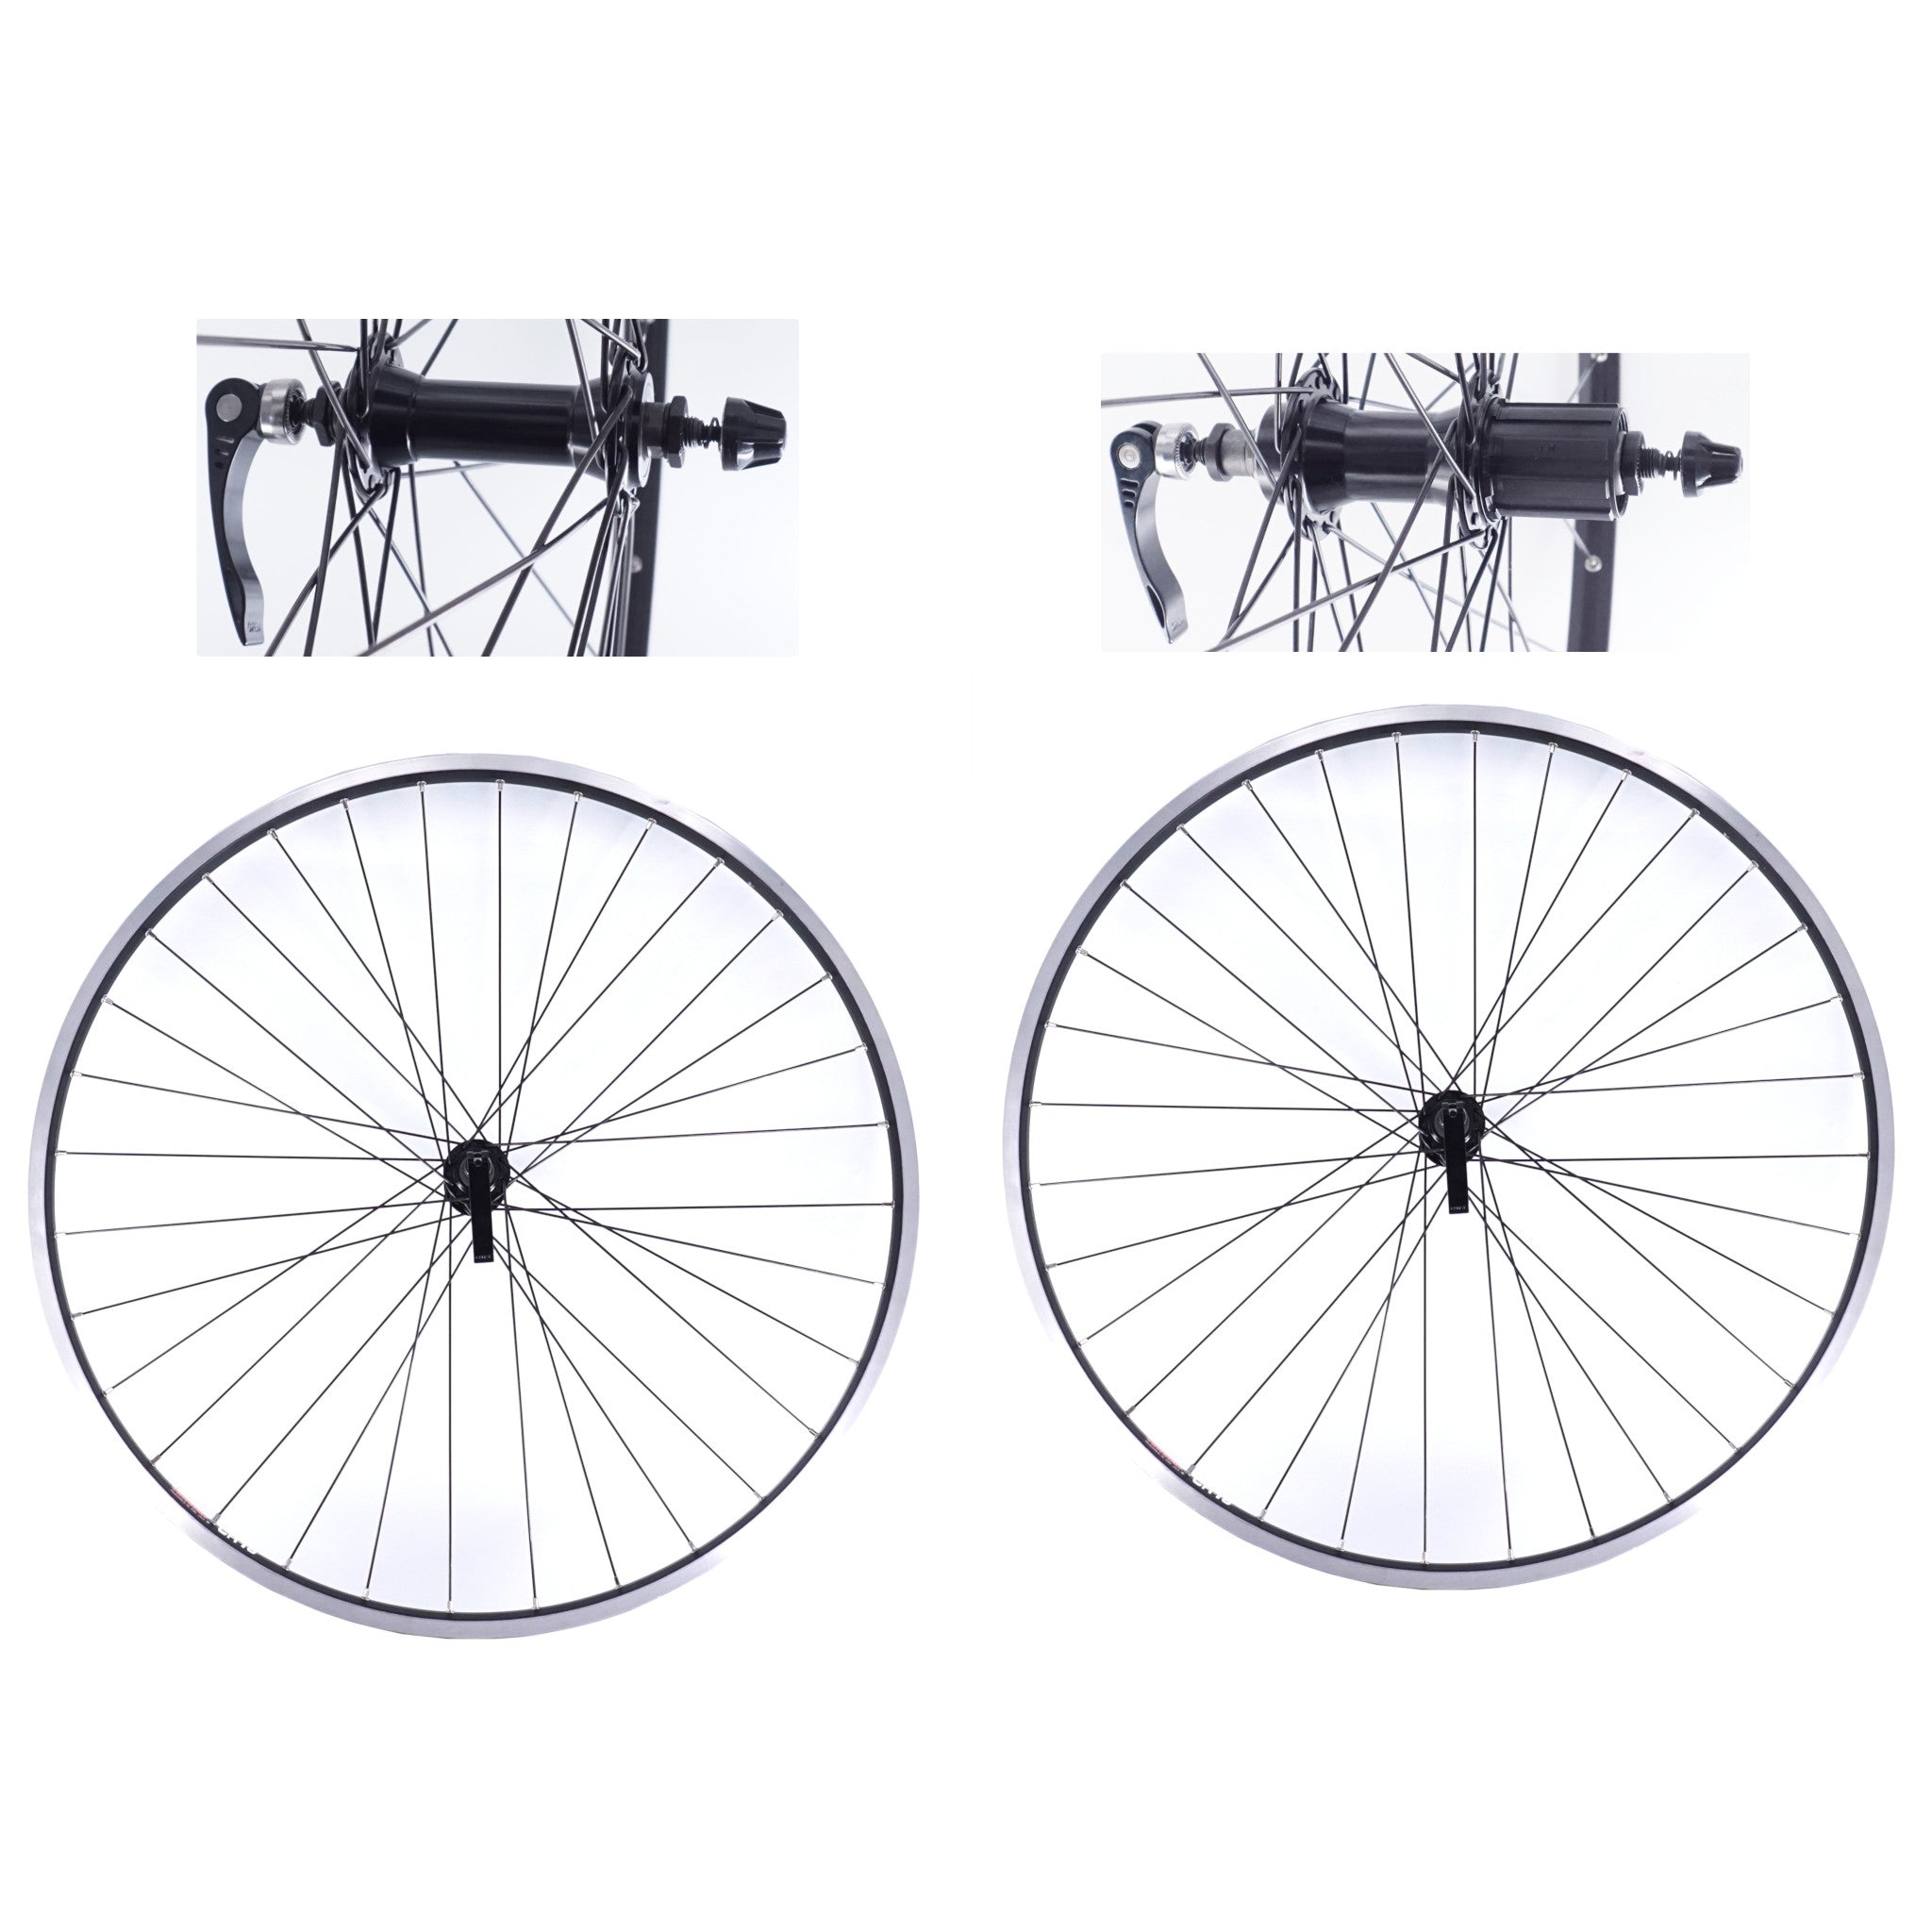 Sun Ringle CR-18 700c Front and Rear-Cassette (135) Hybrid Bike Wheelset - The Bikesmiths